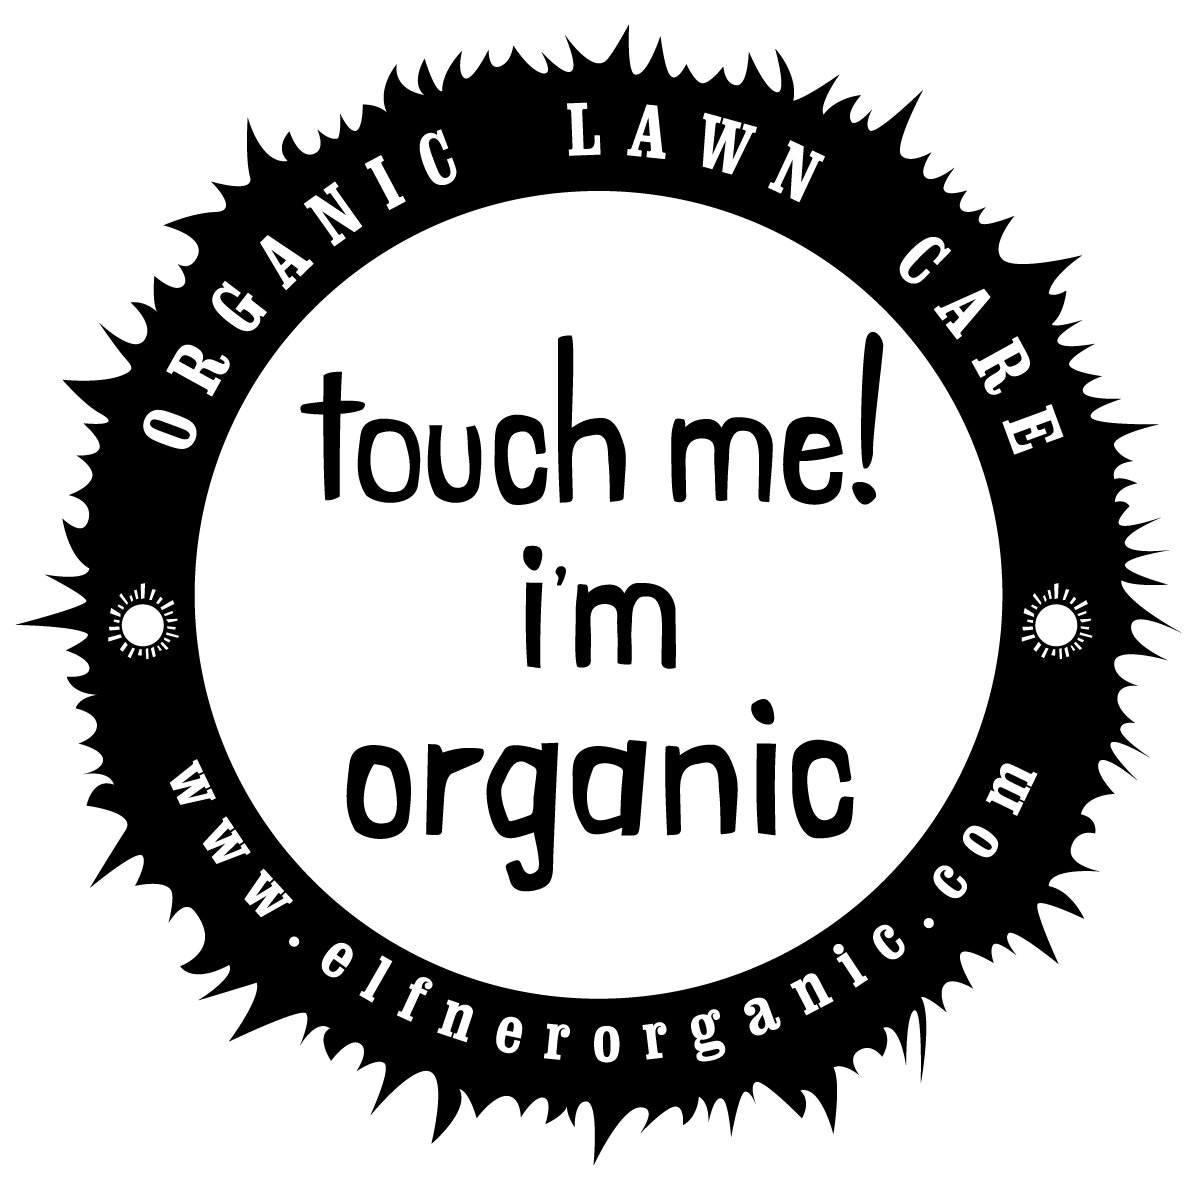 Touch Me! logo.jpg.JPG